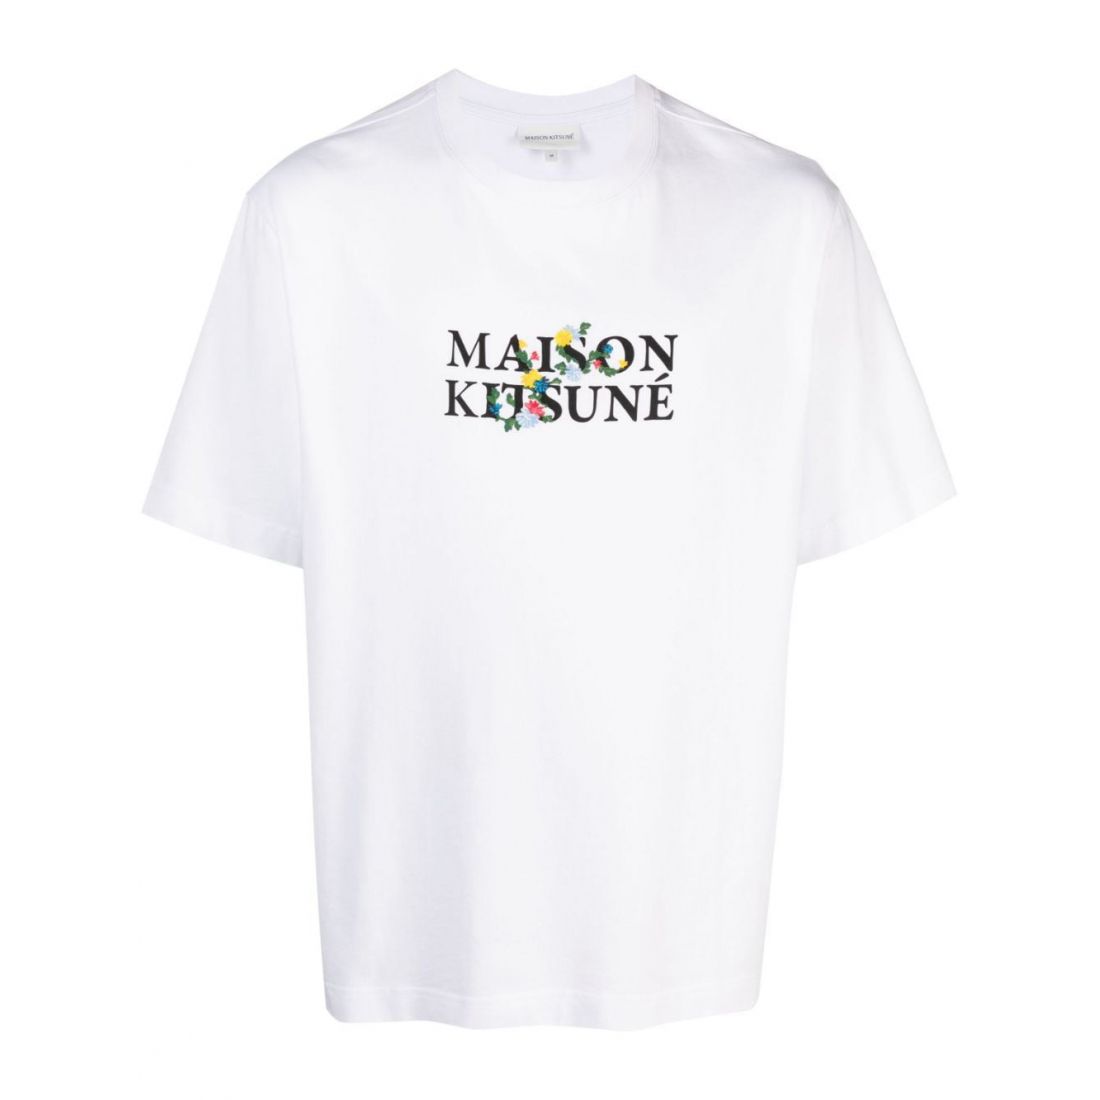 Maison Kitsuné - T-shirt 'Logo' pour Hommes